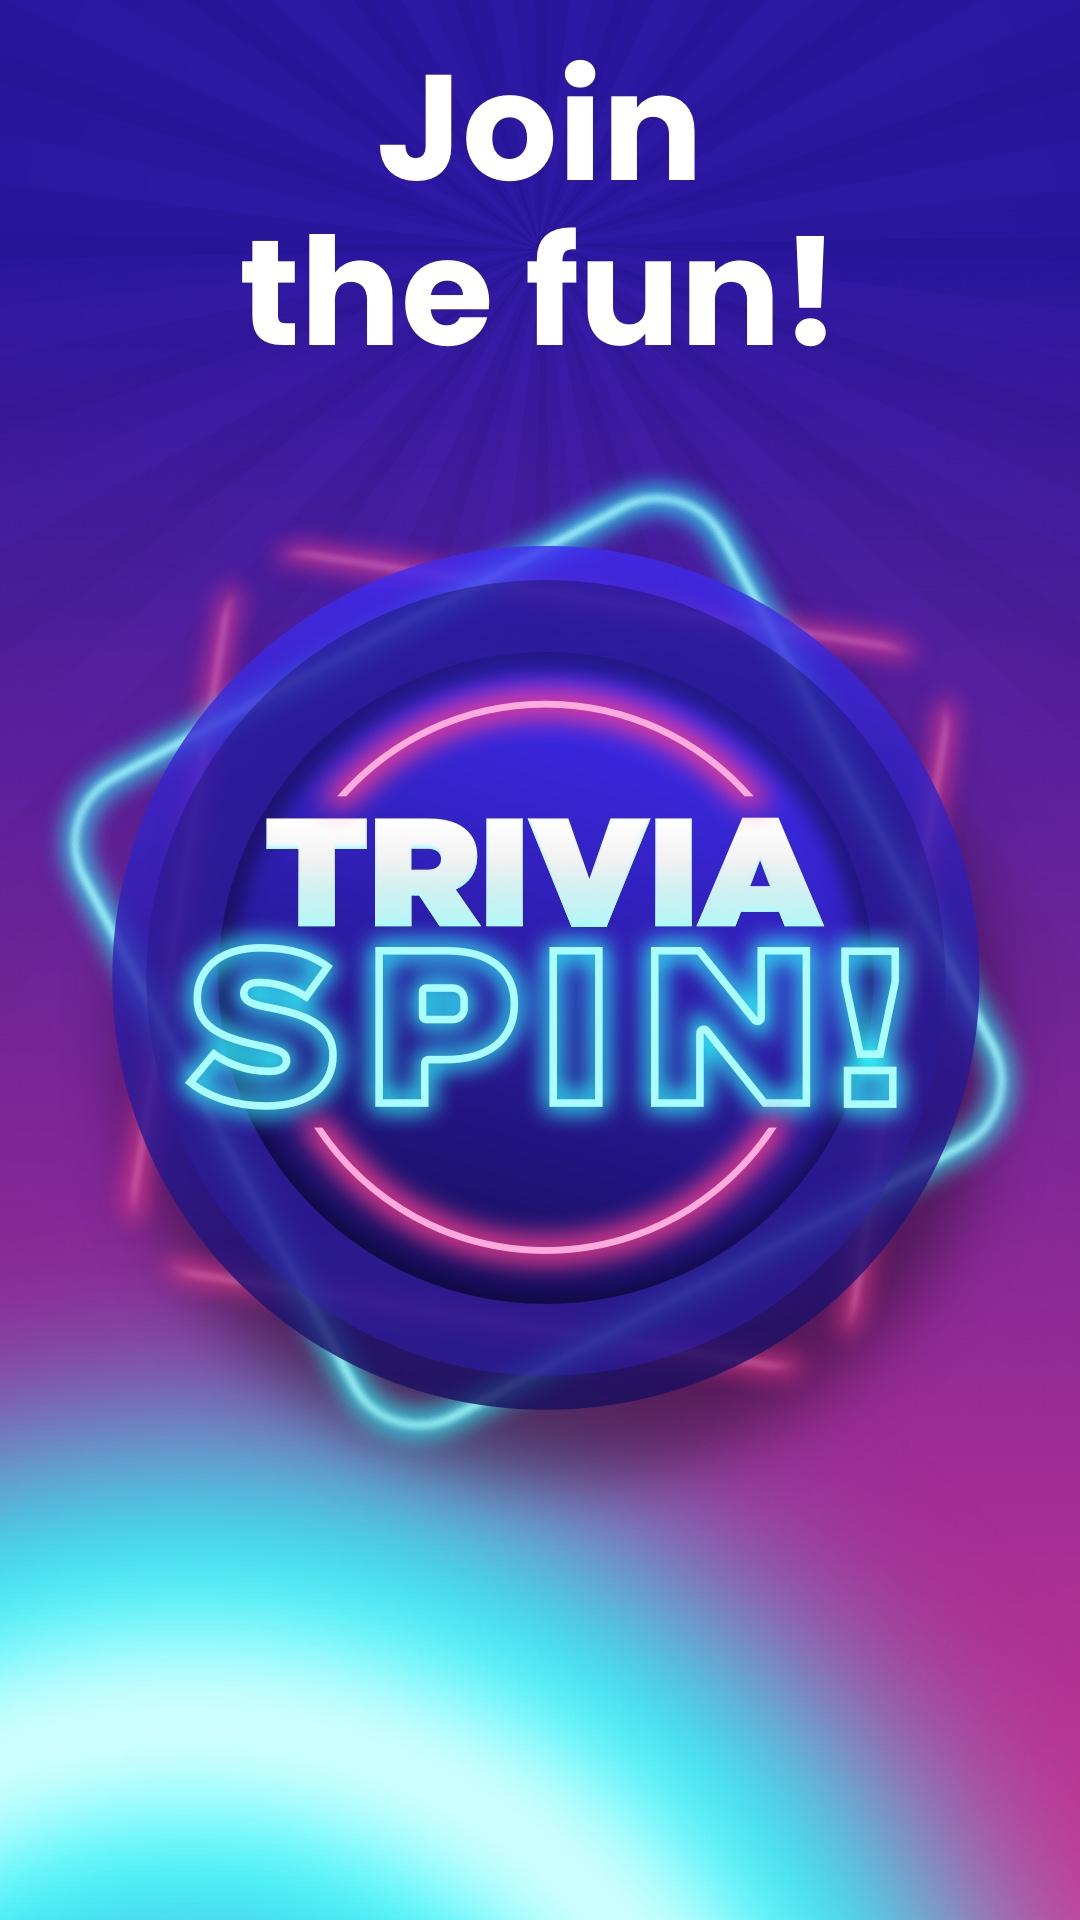 Trivia spin